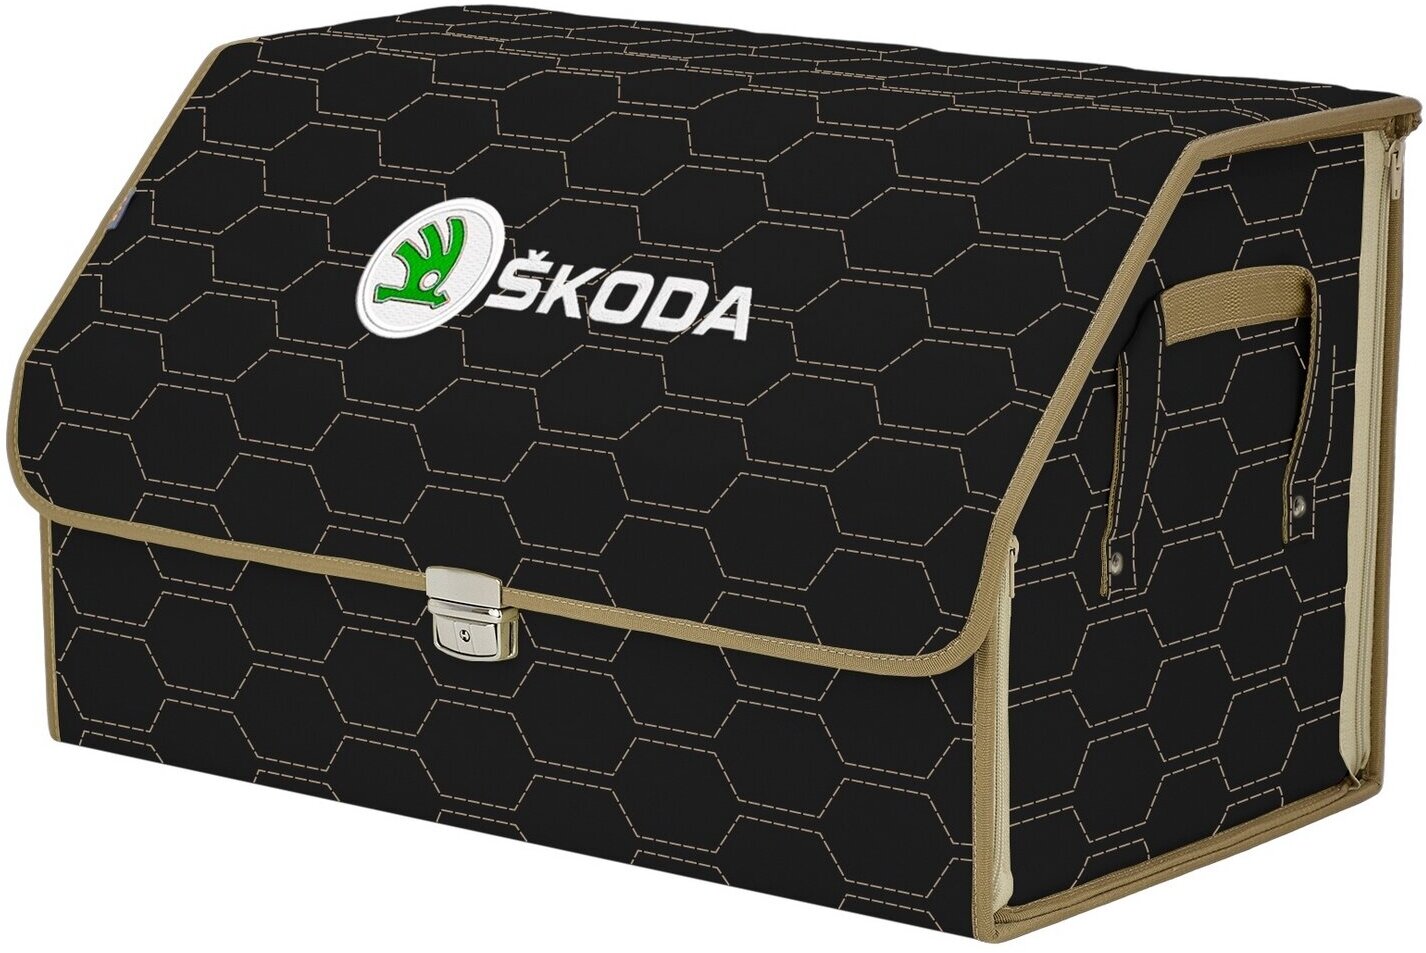 Органайзер-саквояж в багажник "Союз Премиум" (размер XL). Цвет: черный с бежевой прострочкой Соты и вышивкой Skoda (Шкода).